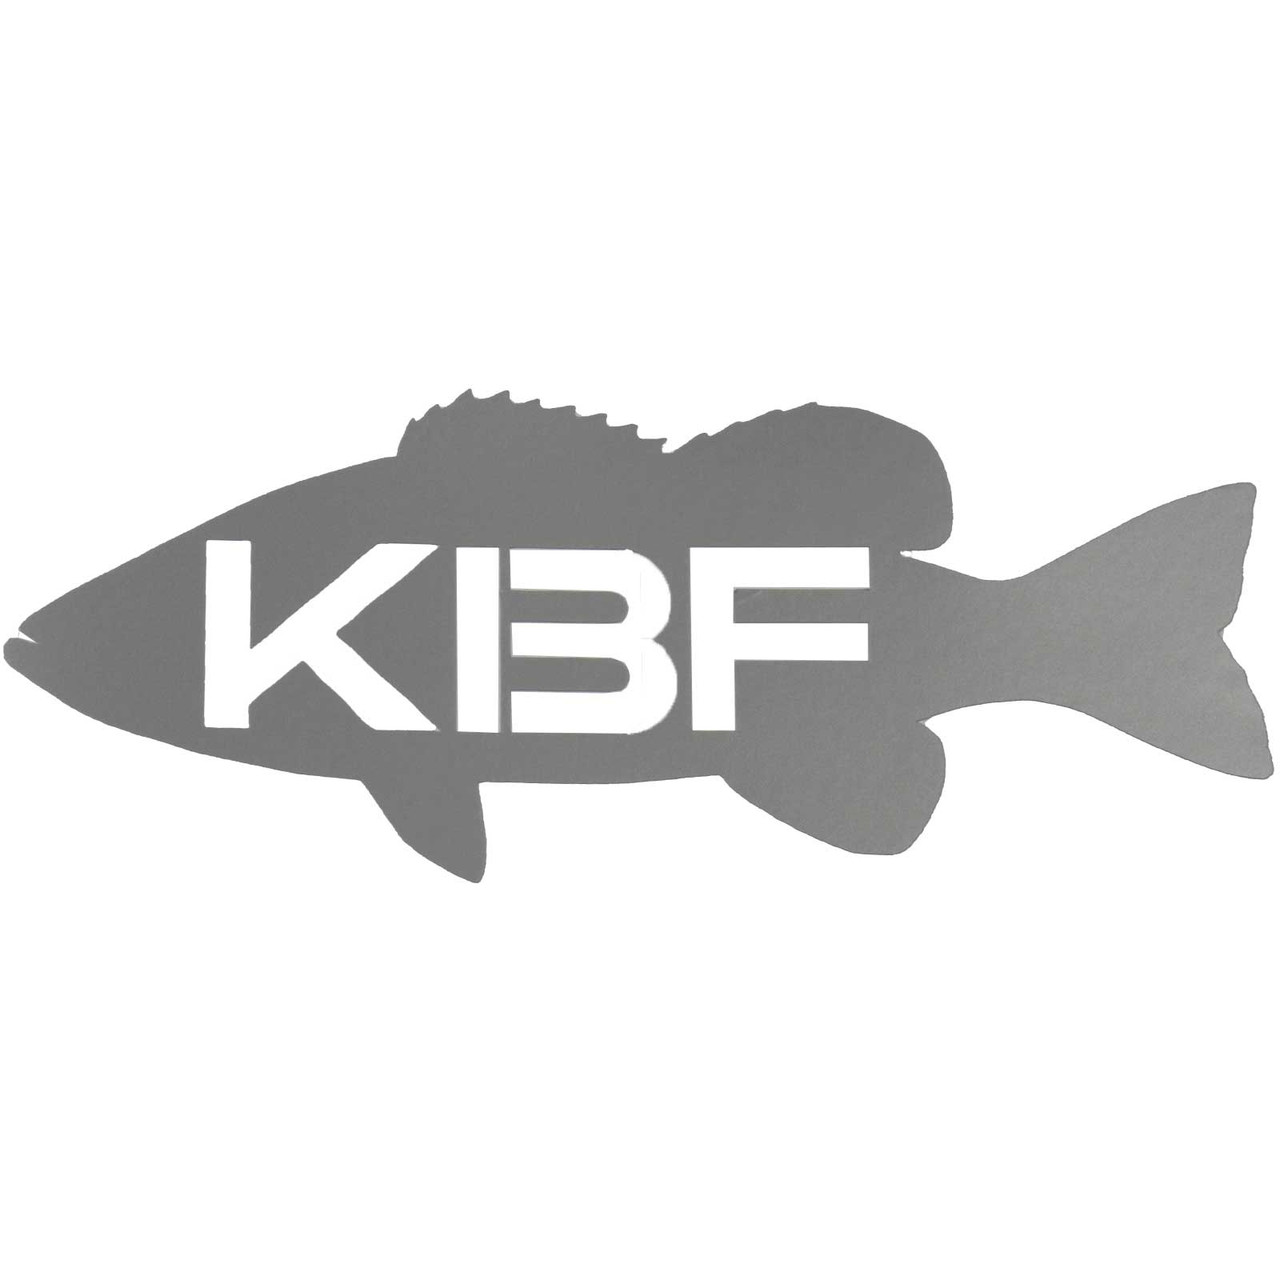 Kayak Bass Fishing KBF Logo Decal